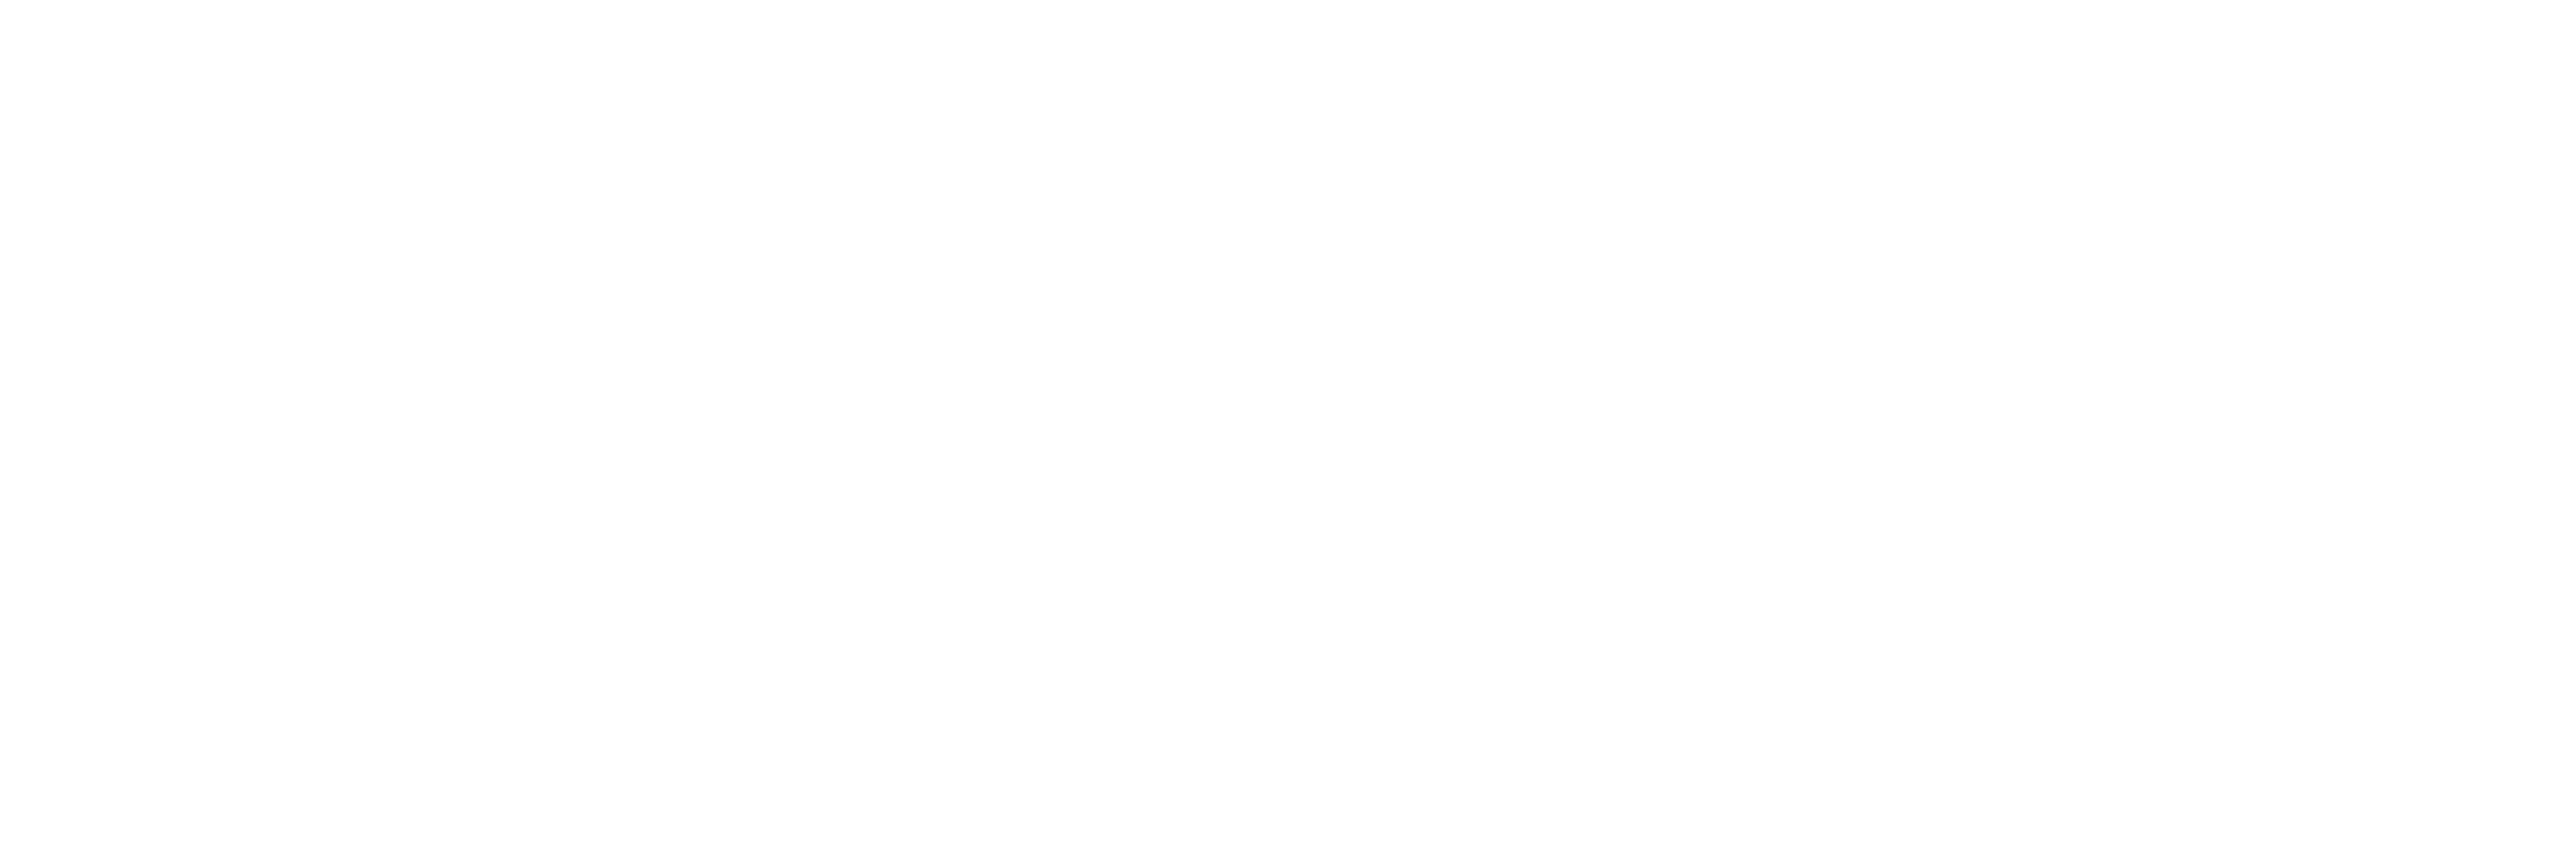 PZRC logo